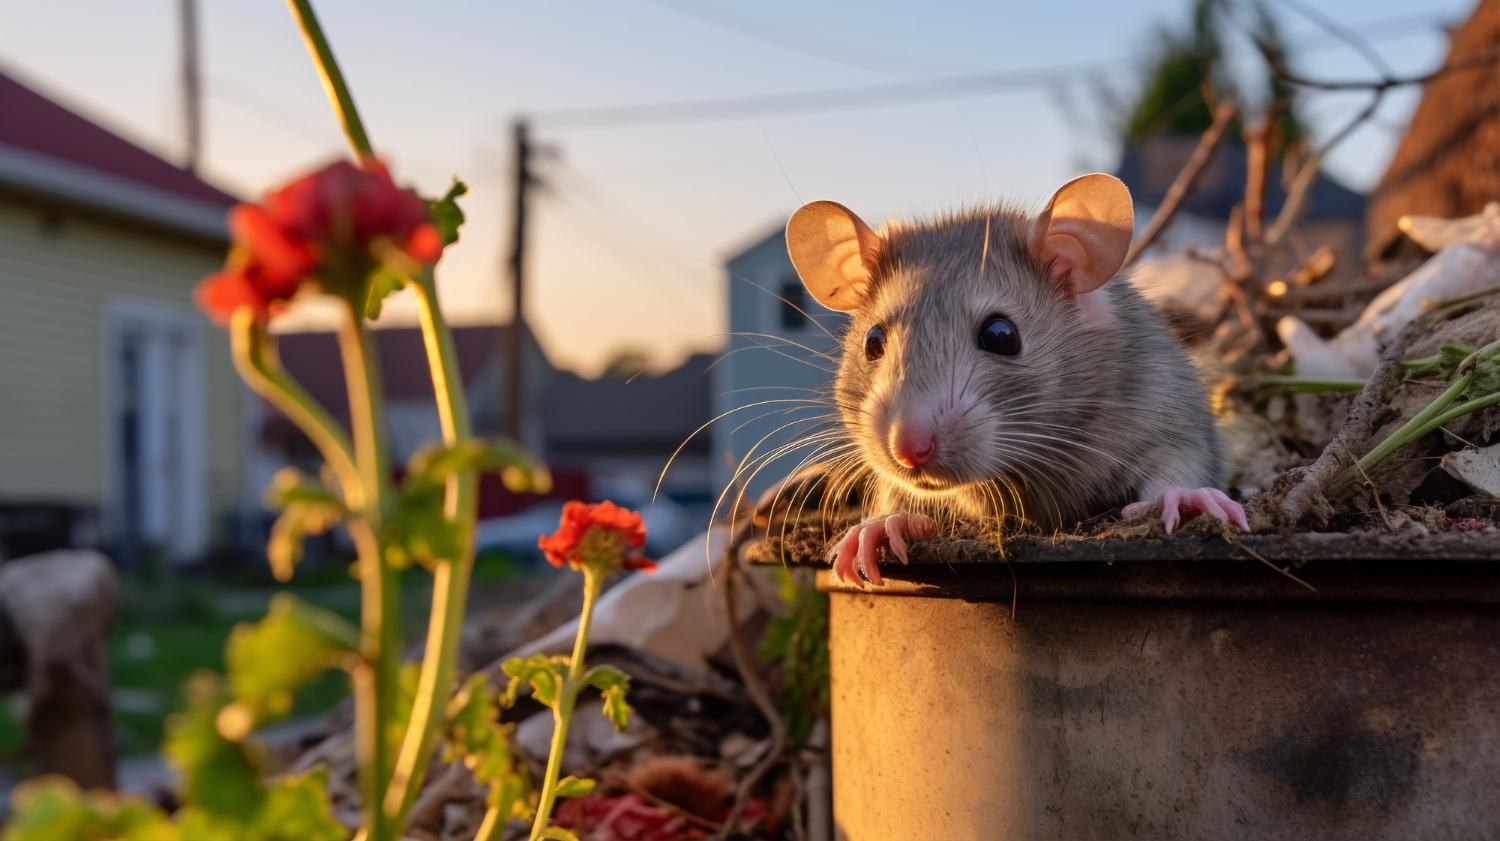 Pourquoi les communes touchées par les rats devraient prioriser les services de dératisation professionnelle